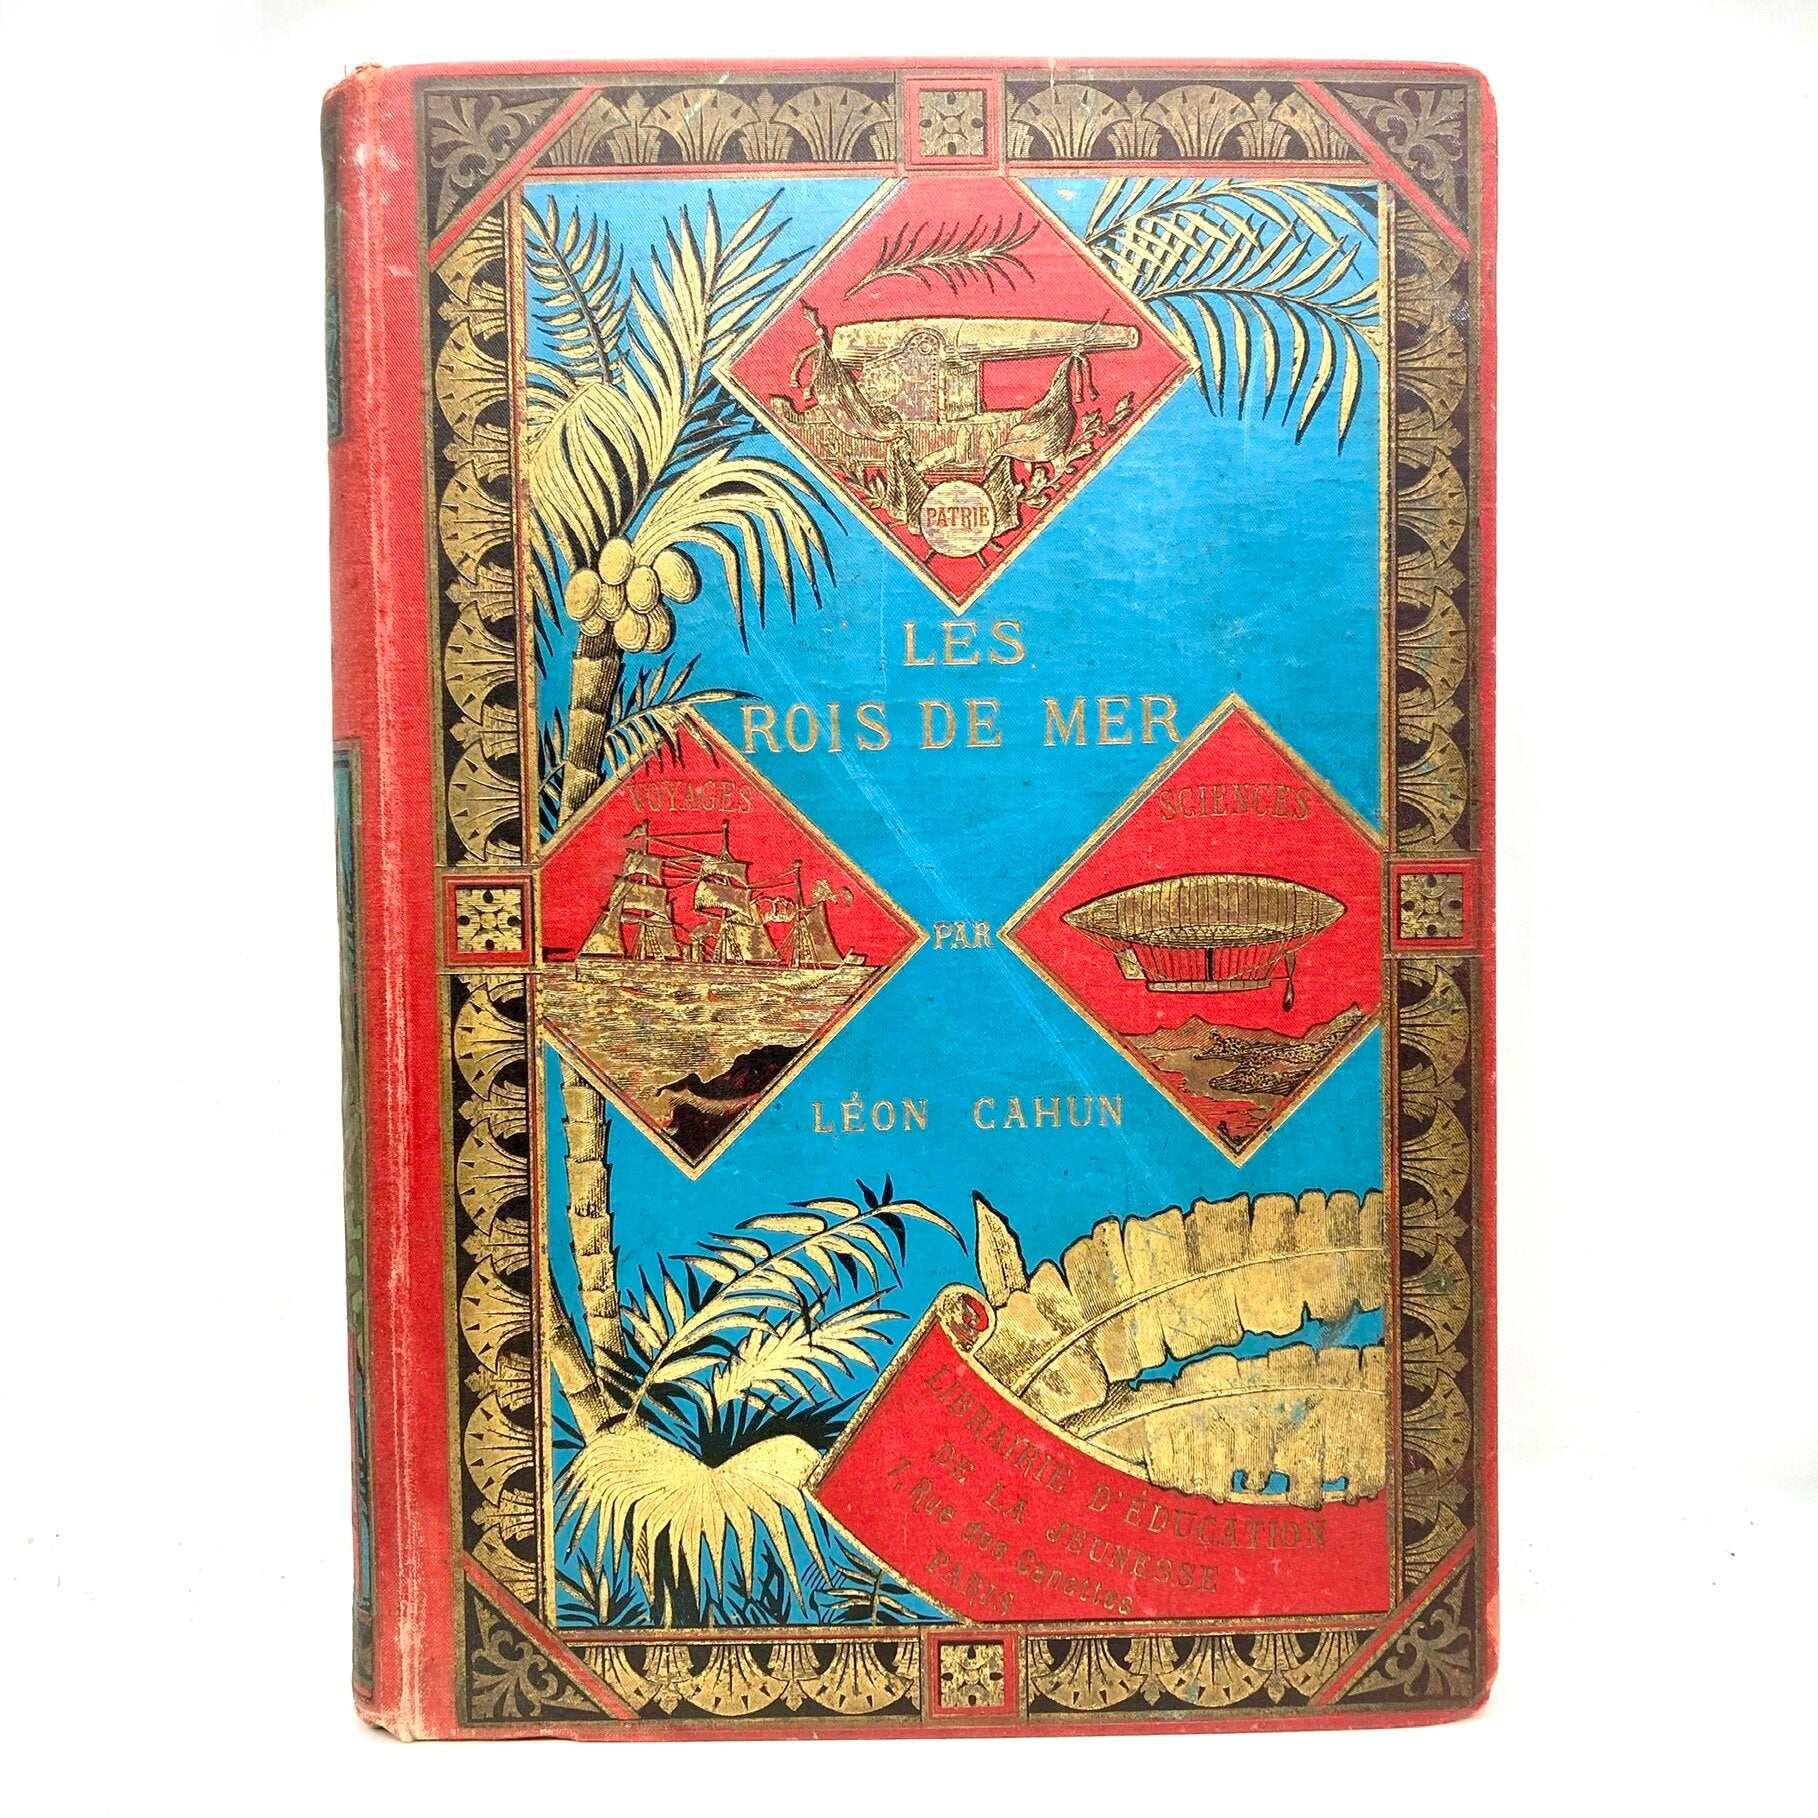 CAHUN, Leon "Les Rois des Mers" [Librarie d'Education de la Jeunesse, c1896] - Buzz Bookstore